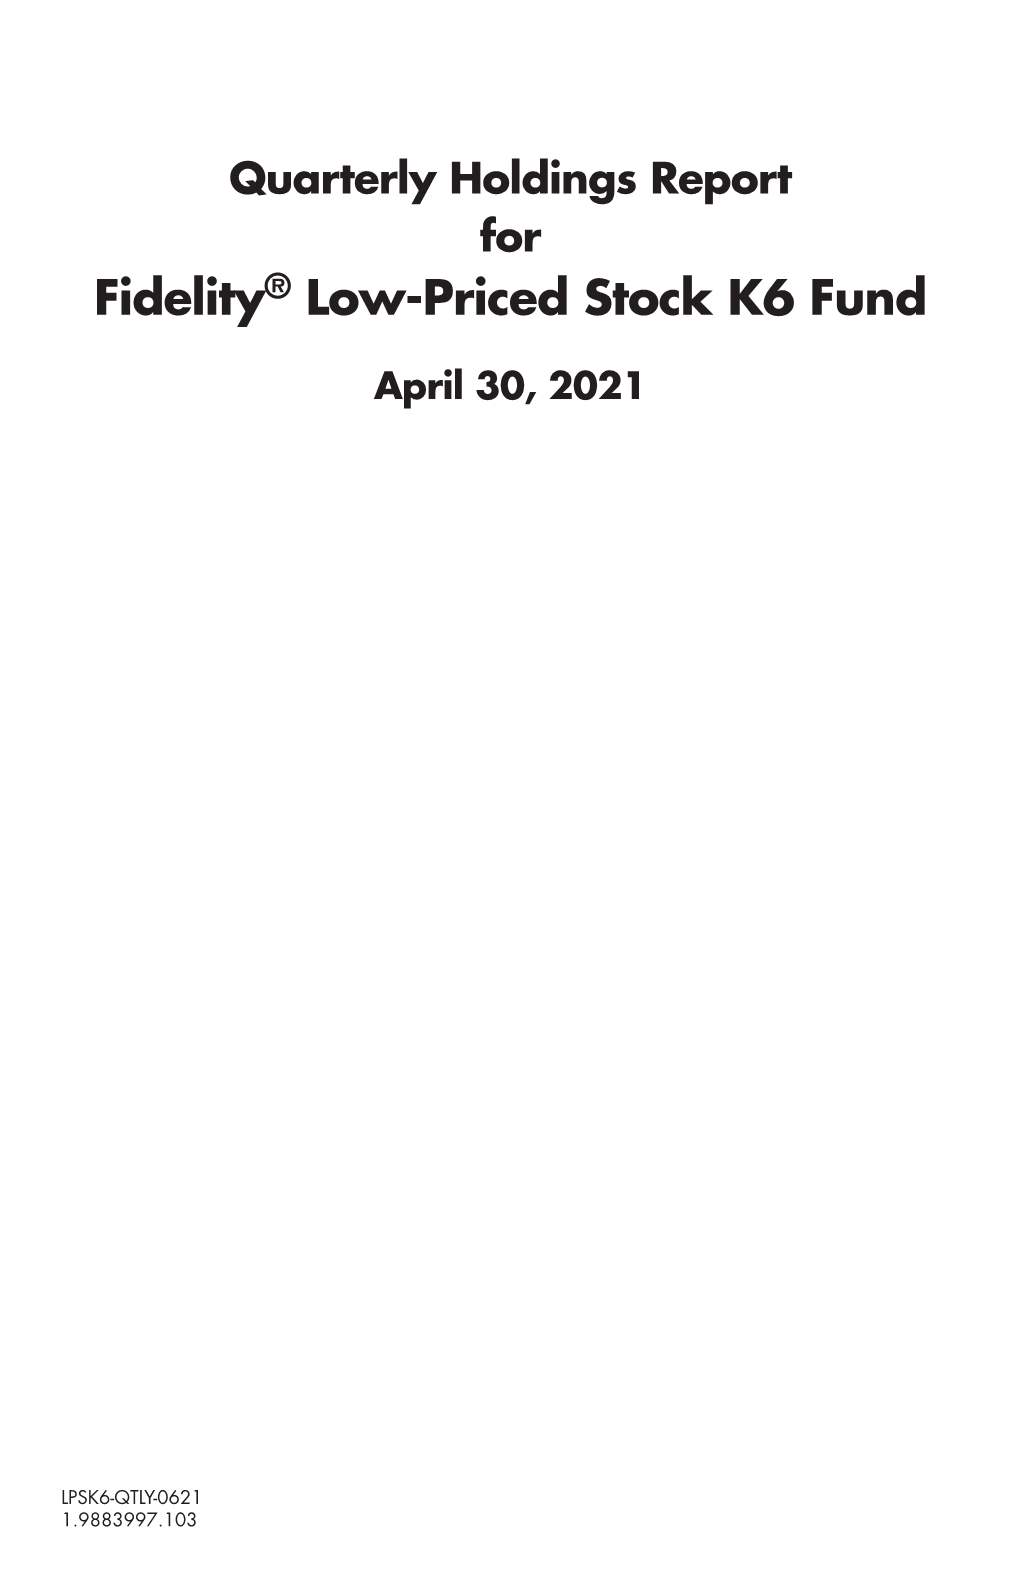 Fidelity® Low-Priced Stock K6 Fund